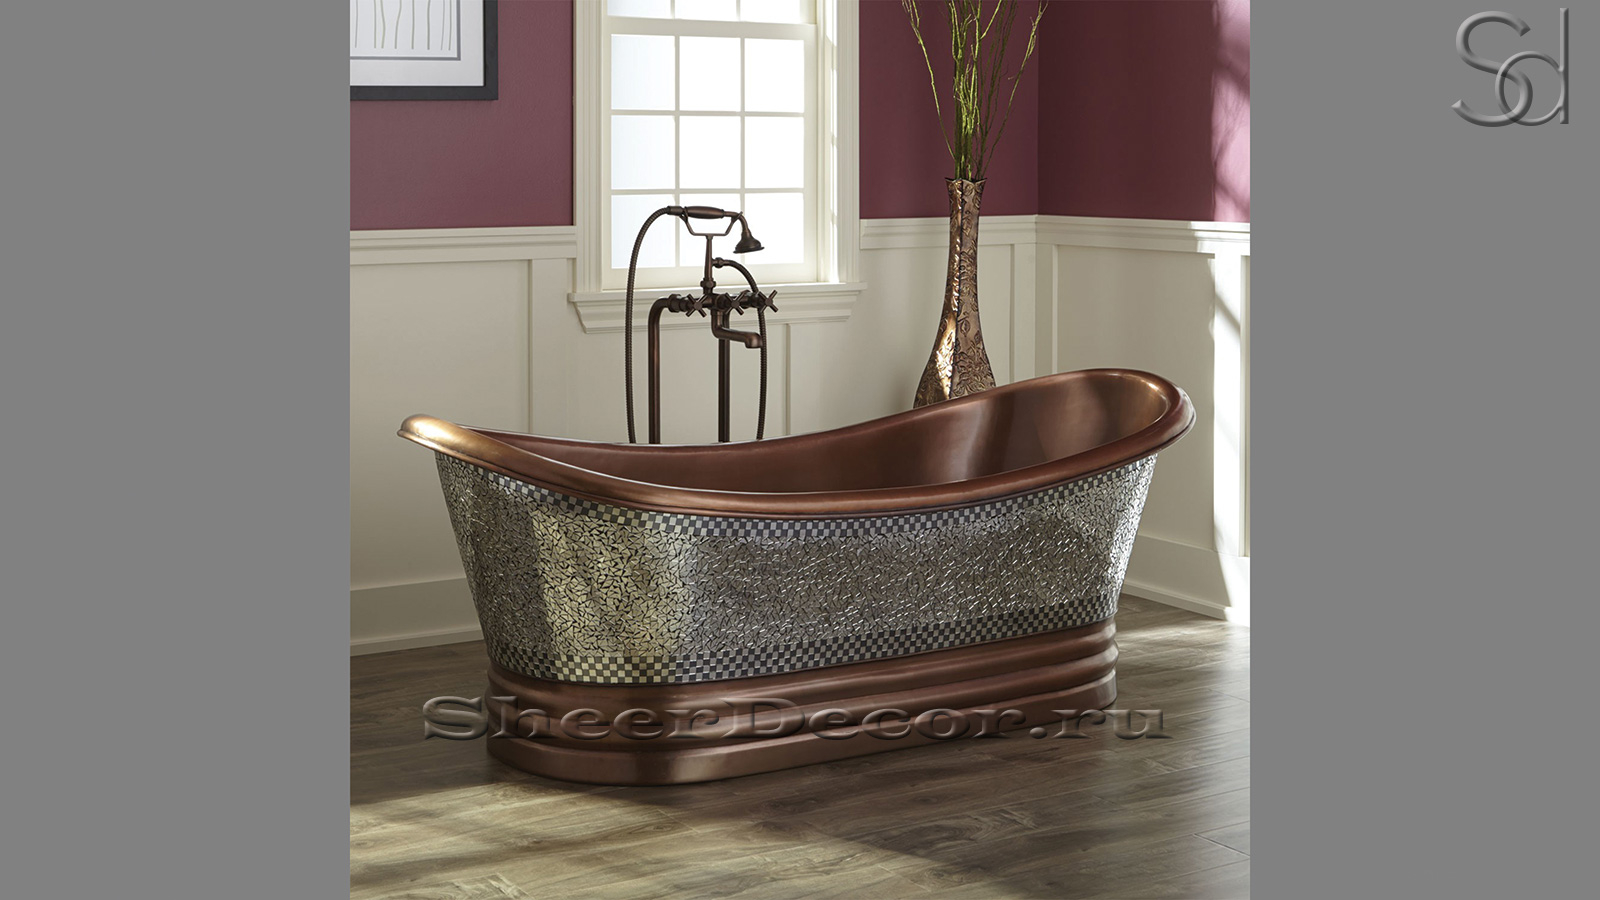 Дизайнерская ванна Sandra M17 из бронзы Chrome Bronze0683036517 производство ИНДОНЕЗИЯ_1